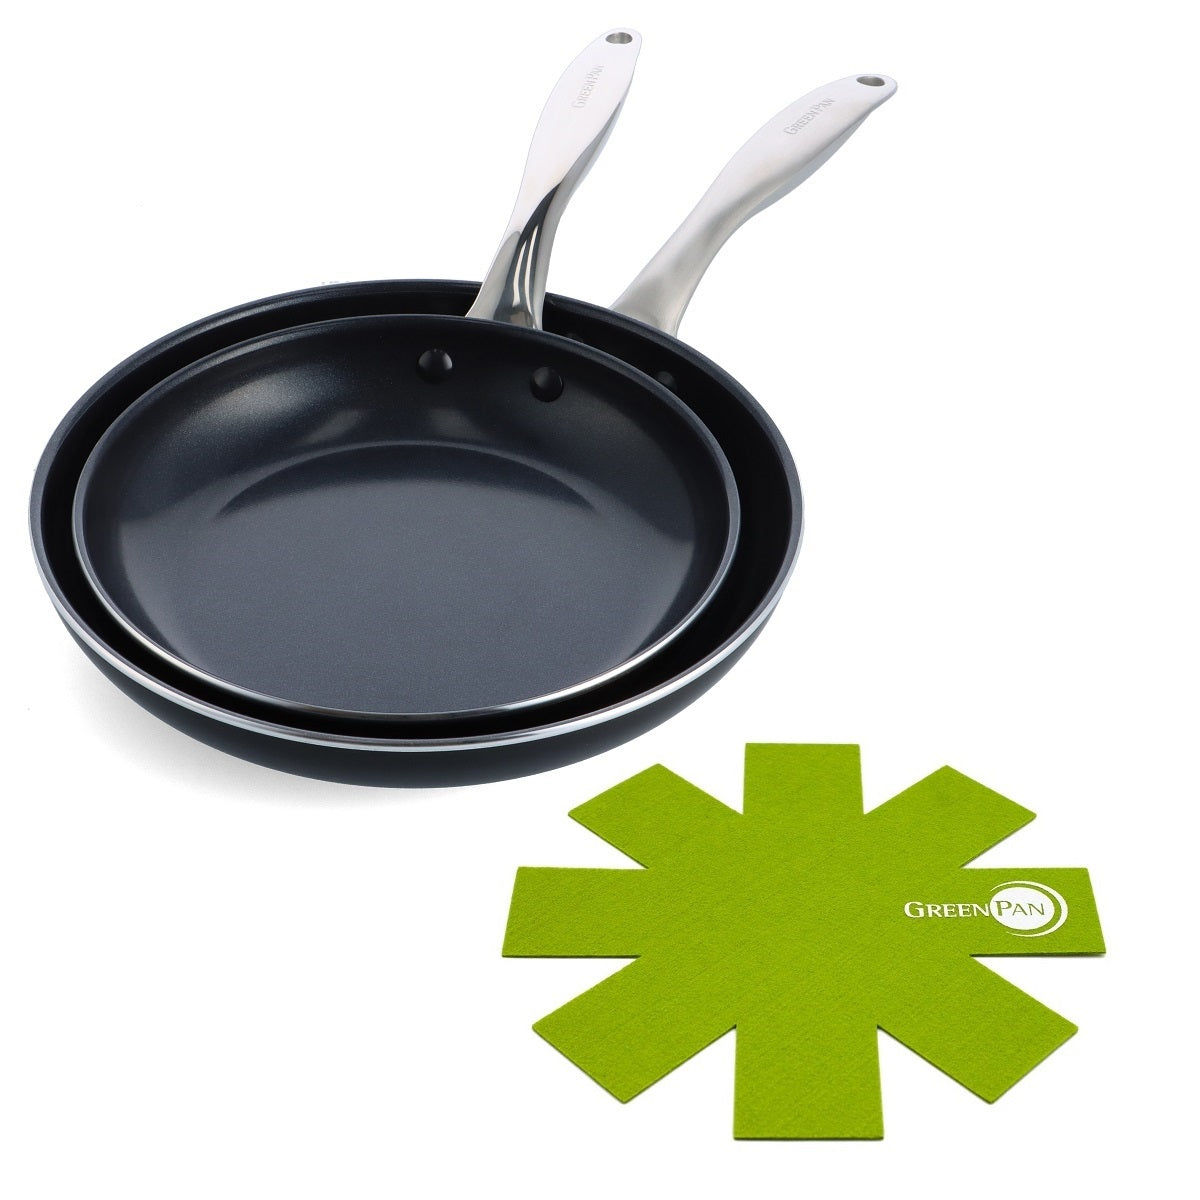 CC006705-002 - Royal 2pc Cookware Sets, Black - 24 & 28cm - Product Image 1